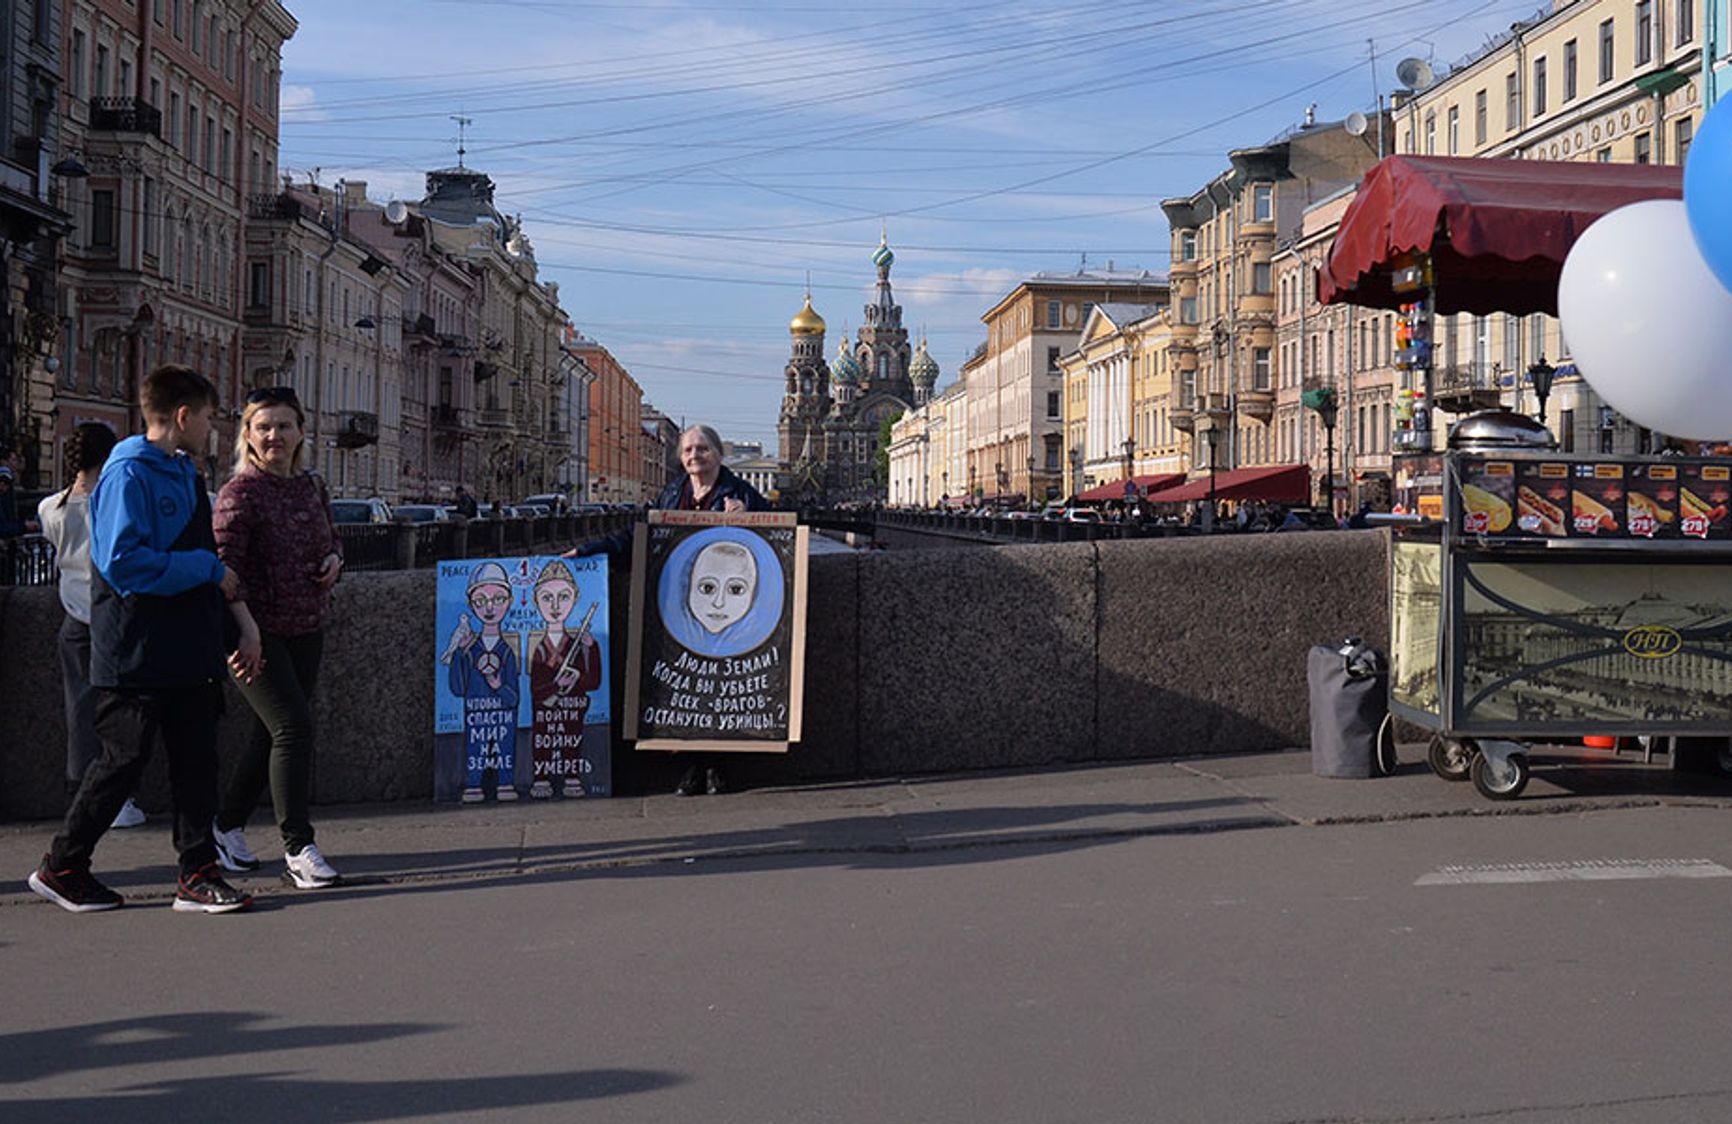 Художница Елена Осипова вновь вышла на пикет в Санкт-Петербурге, нарисовав заново антивоенный плакат, порванный напавшими на нее 9 мая